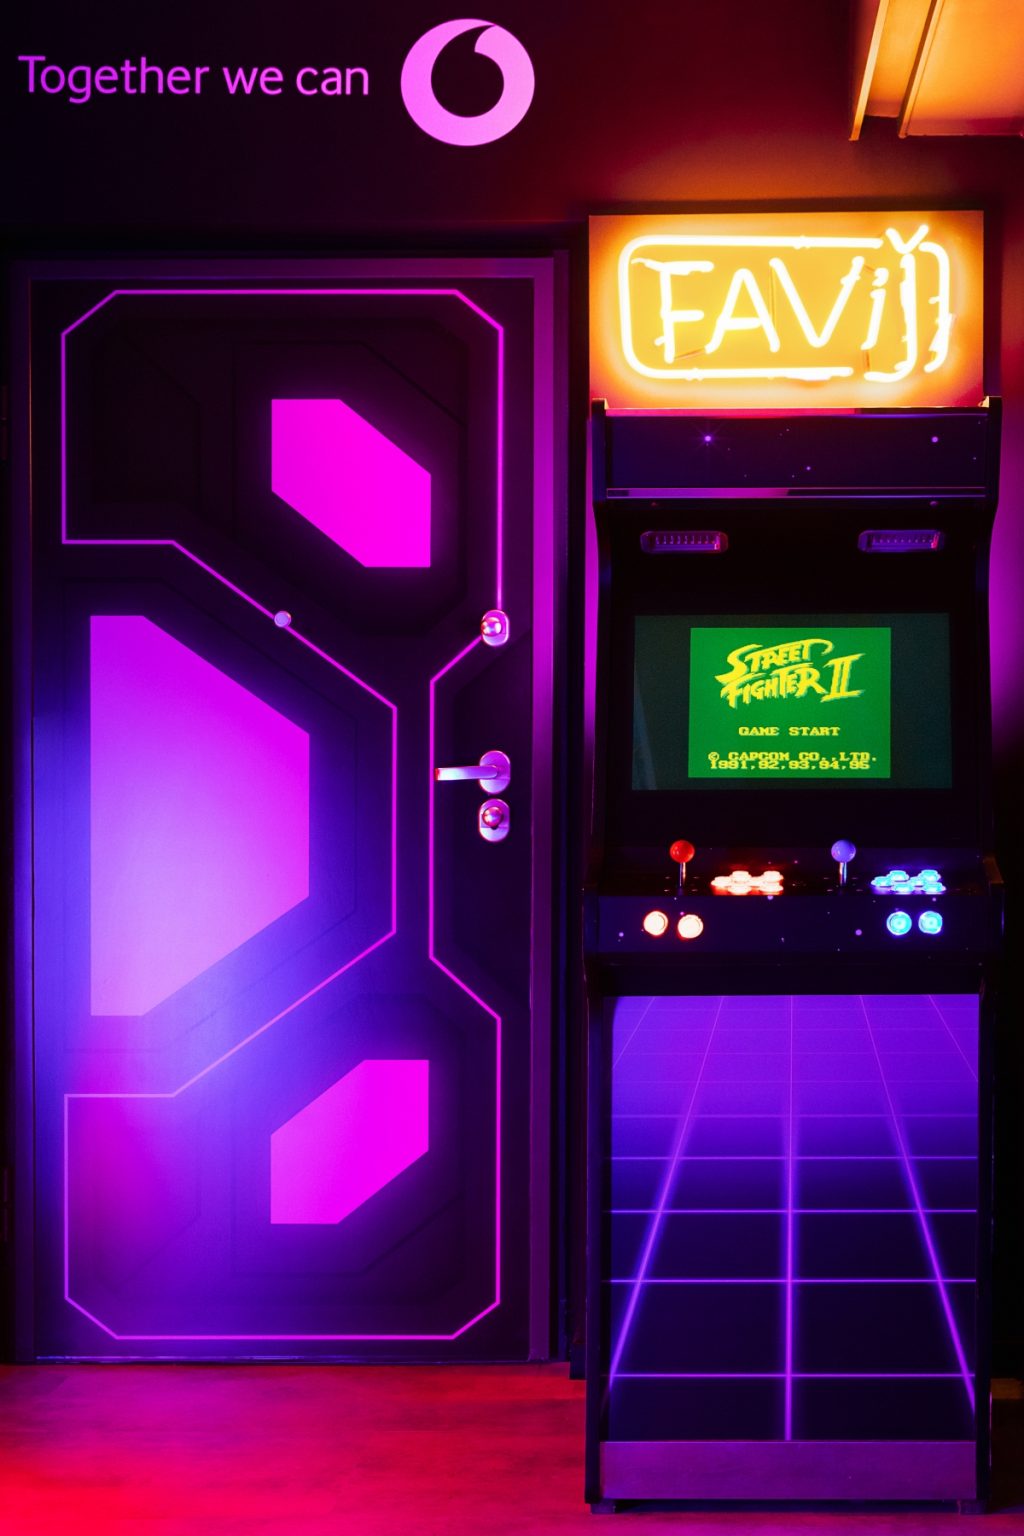 Gaming room Favij progetto Fabio Novembre